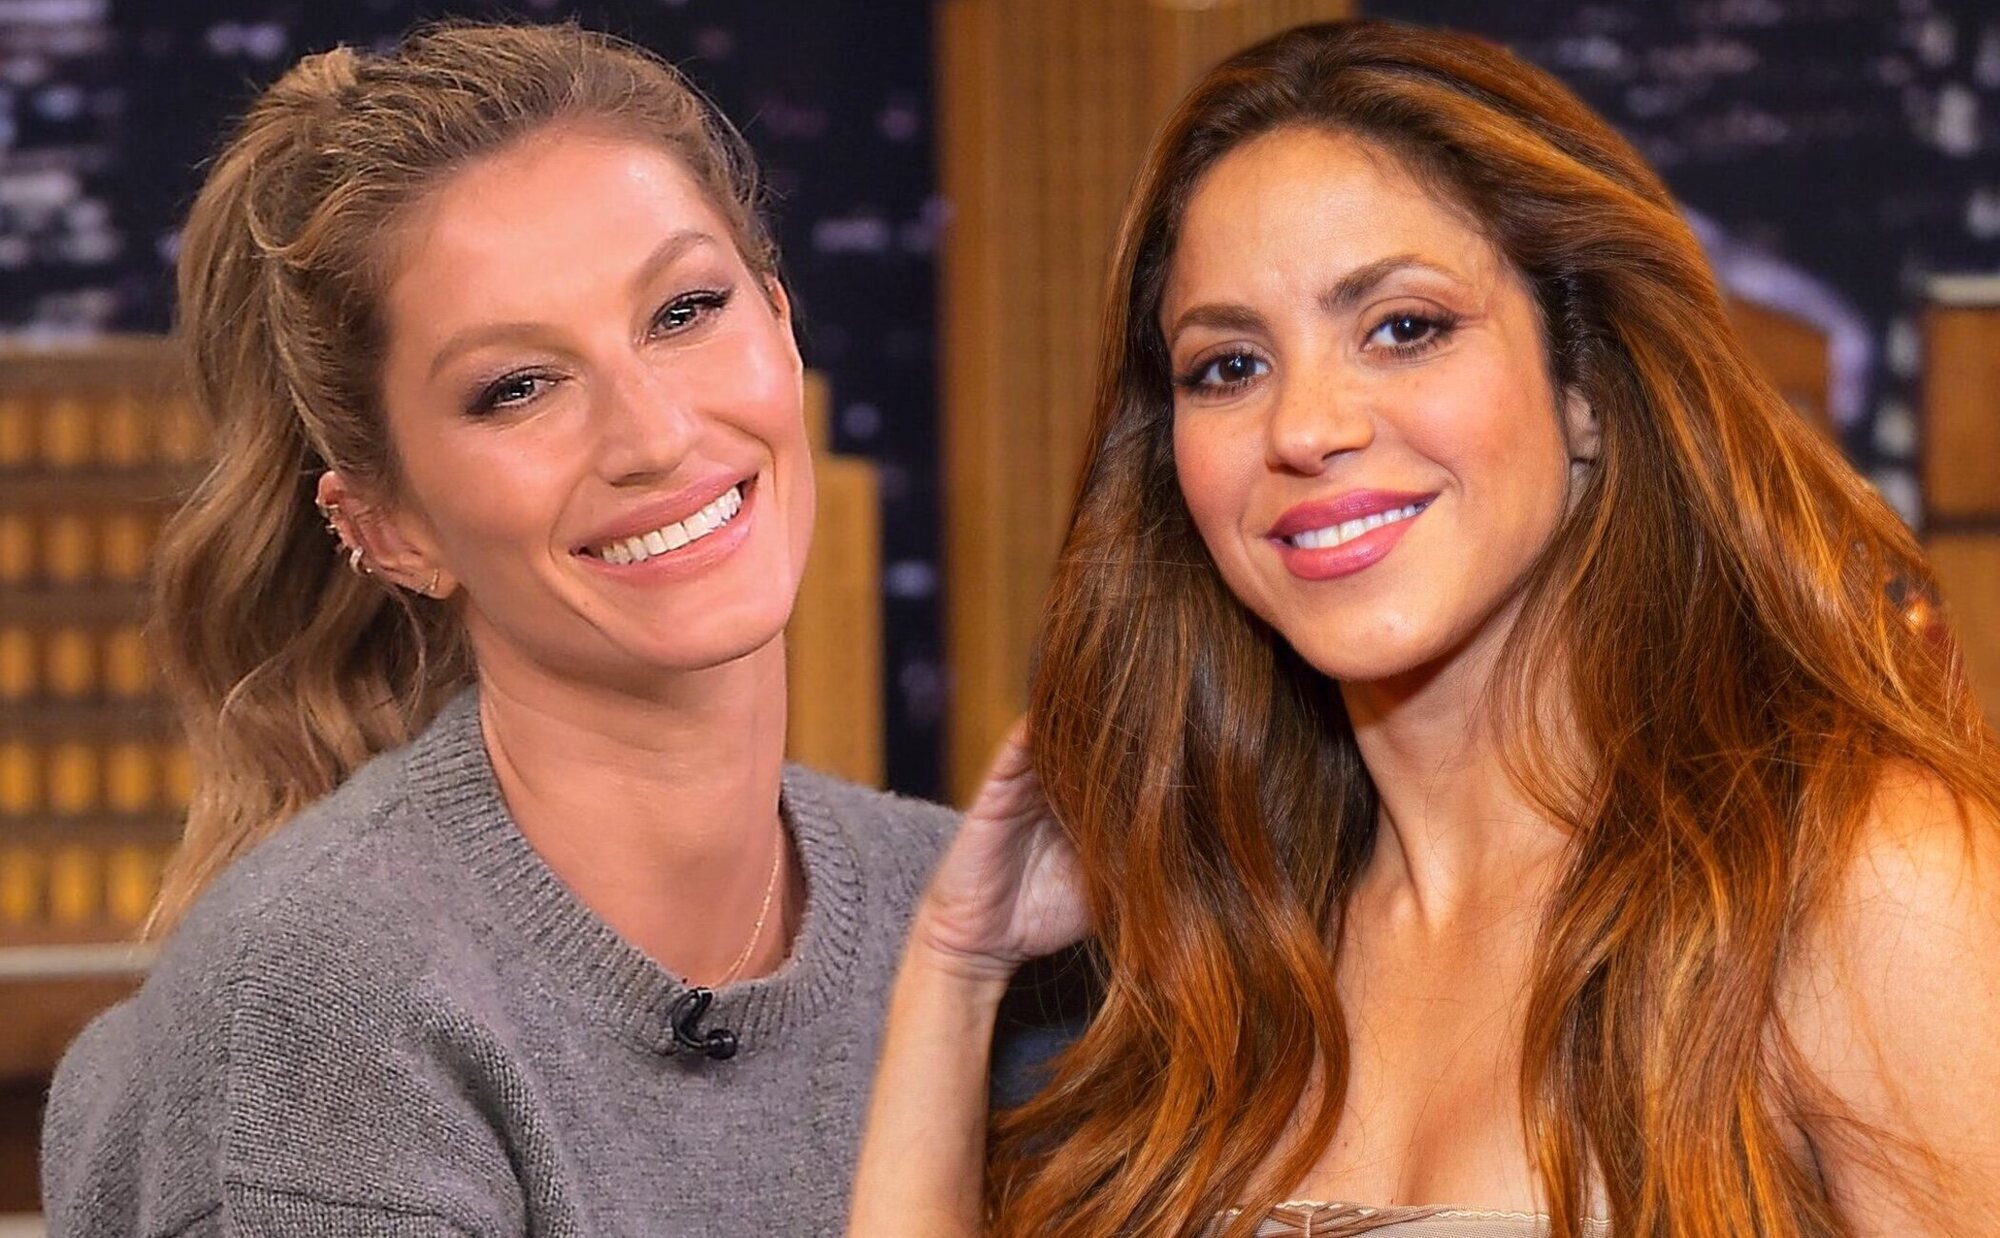 La sorprendente amistad de Shakira y Gisele Bündchen: cenan juntas en Miami acompañadas de sus hijos